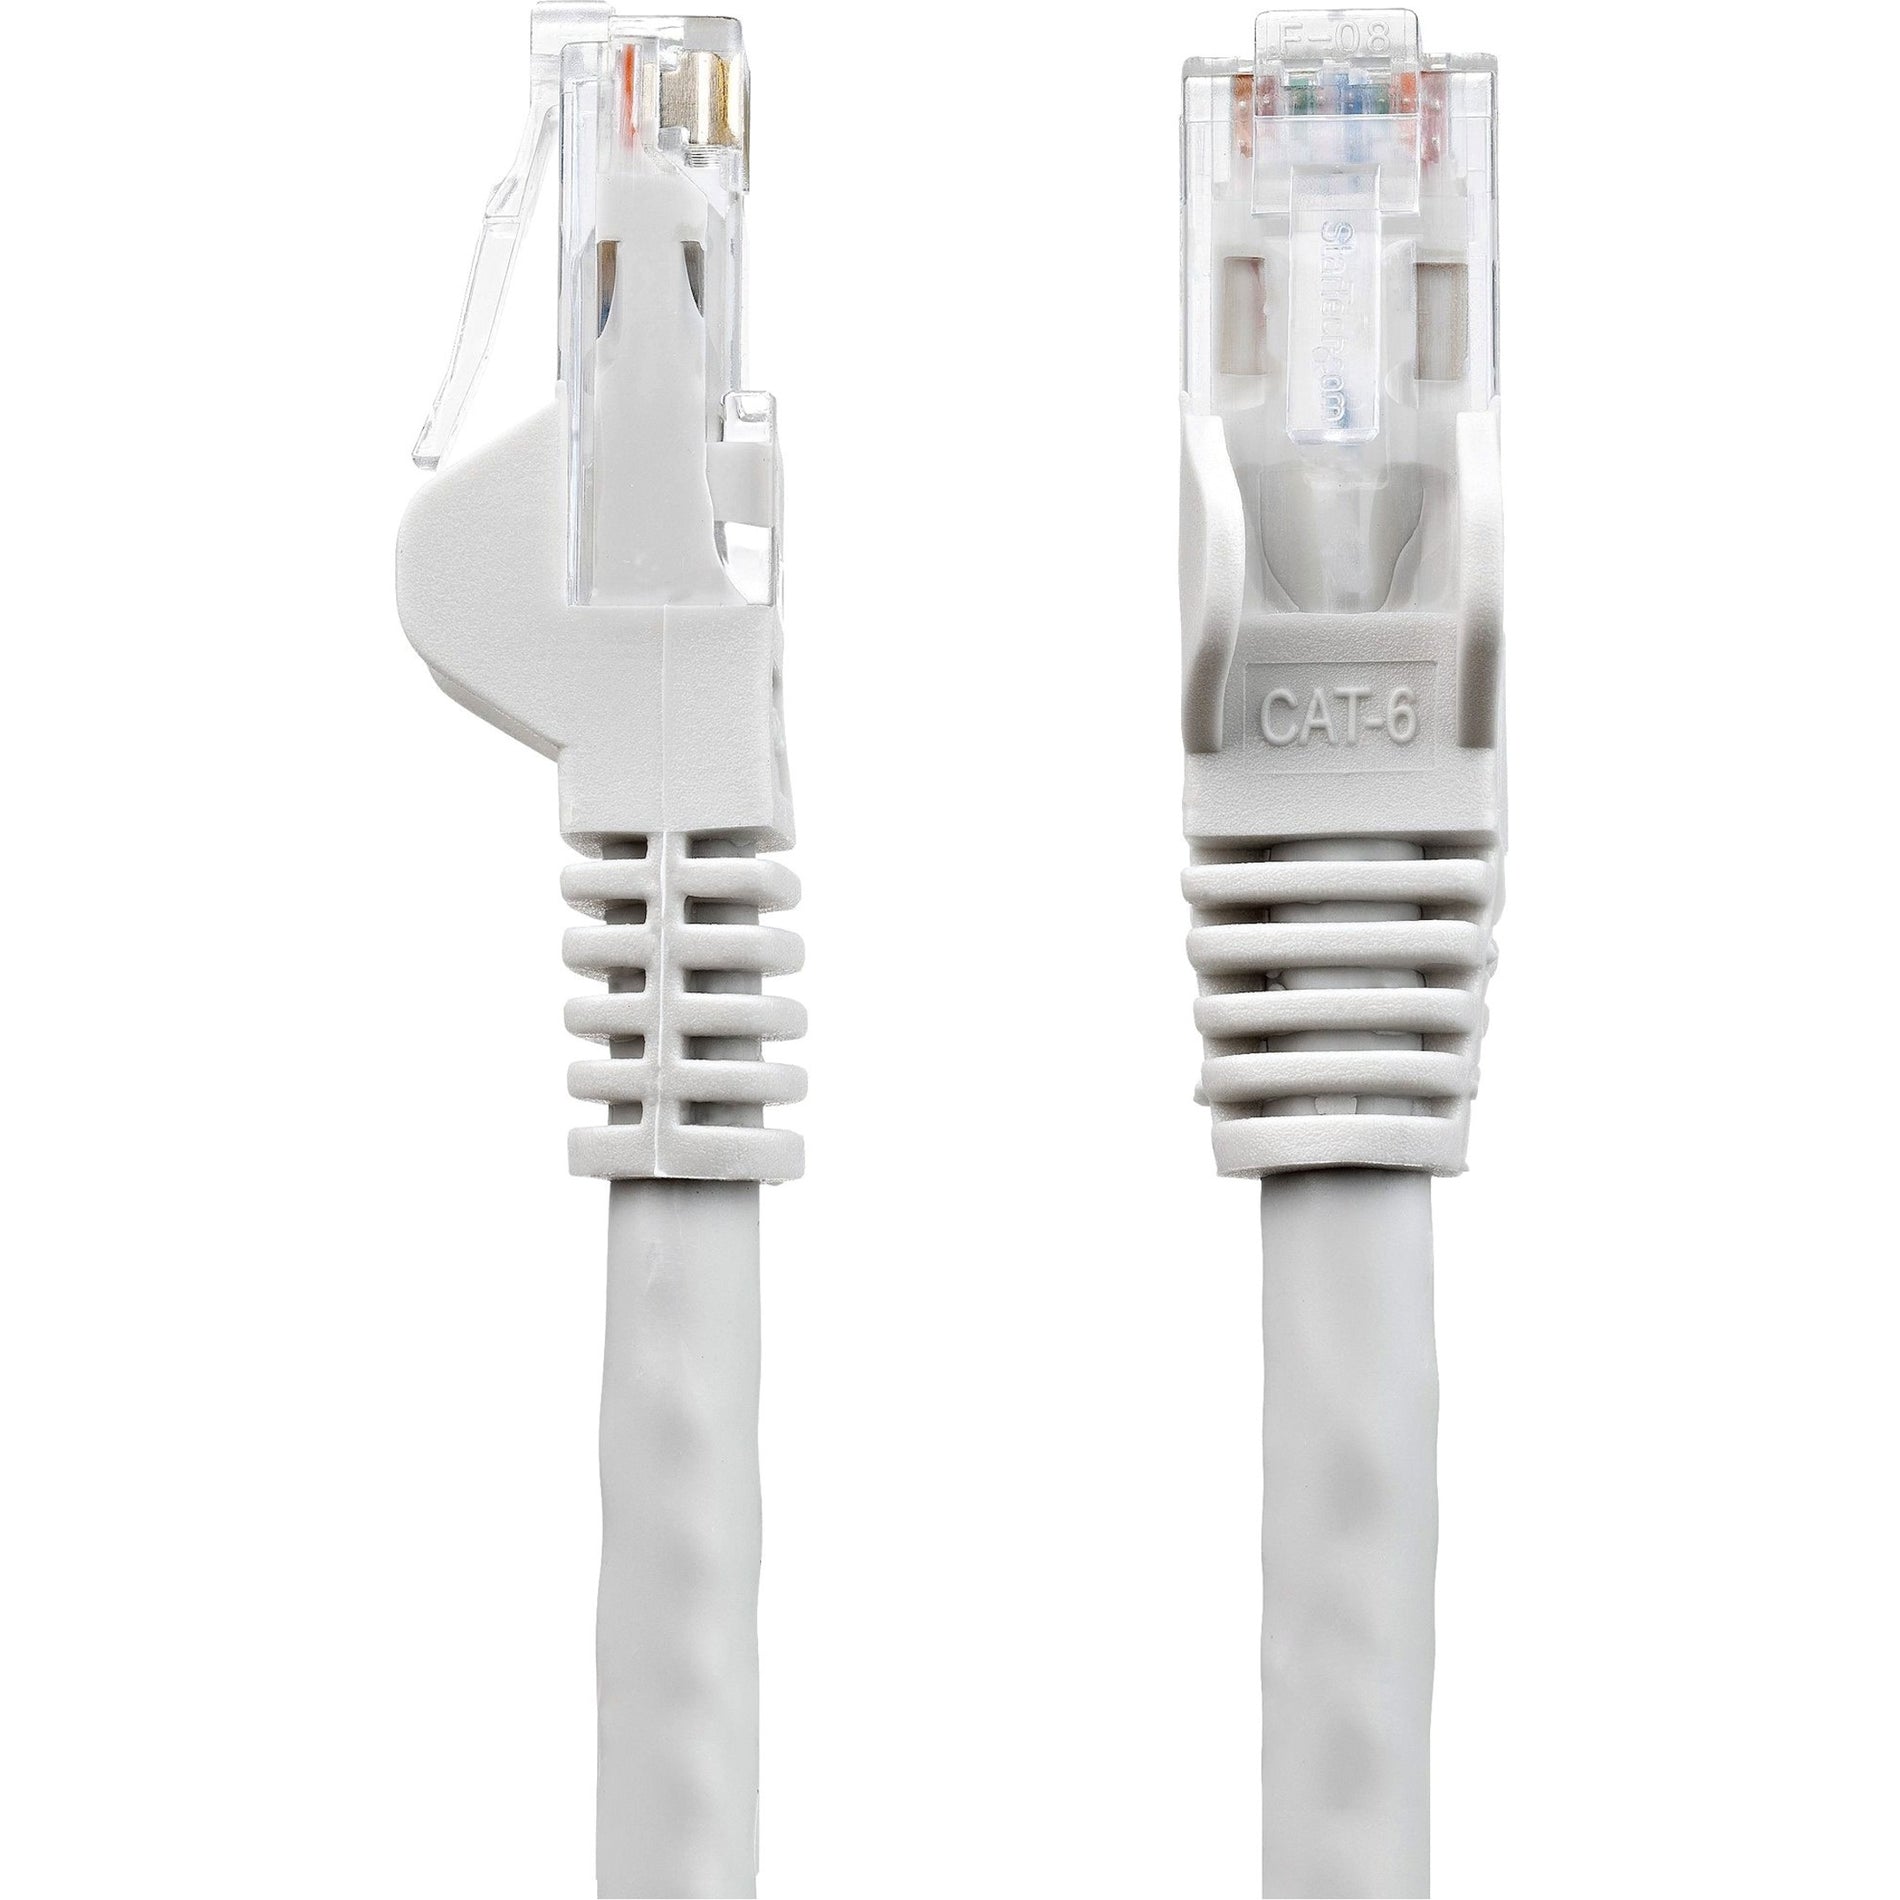 Cable de red StarTech.com N6PATCH2GR Cat6 cable Ethernet gris de 2 pies conectores RJ45 sin enganches.